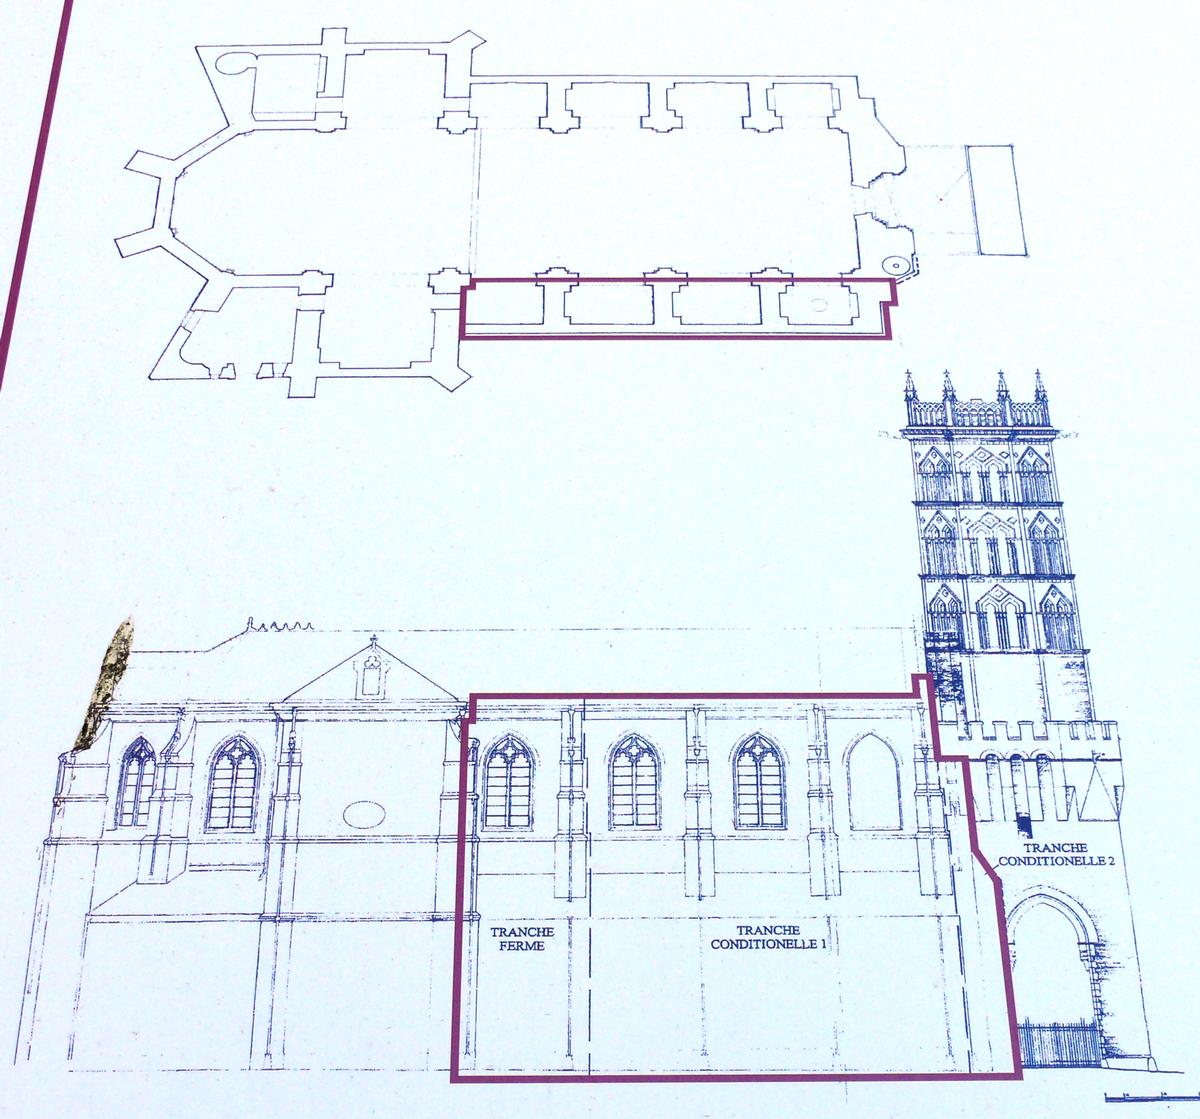 Pamiers - Cathédrale Saint-Antonin (en cours de restauration en 2008) - Plans et position des travaux de restauration en 2008 